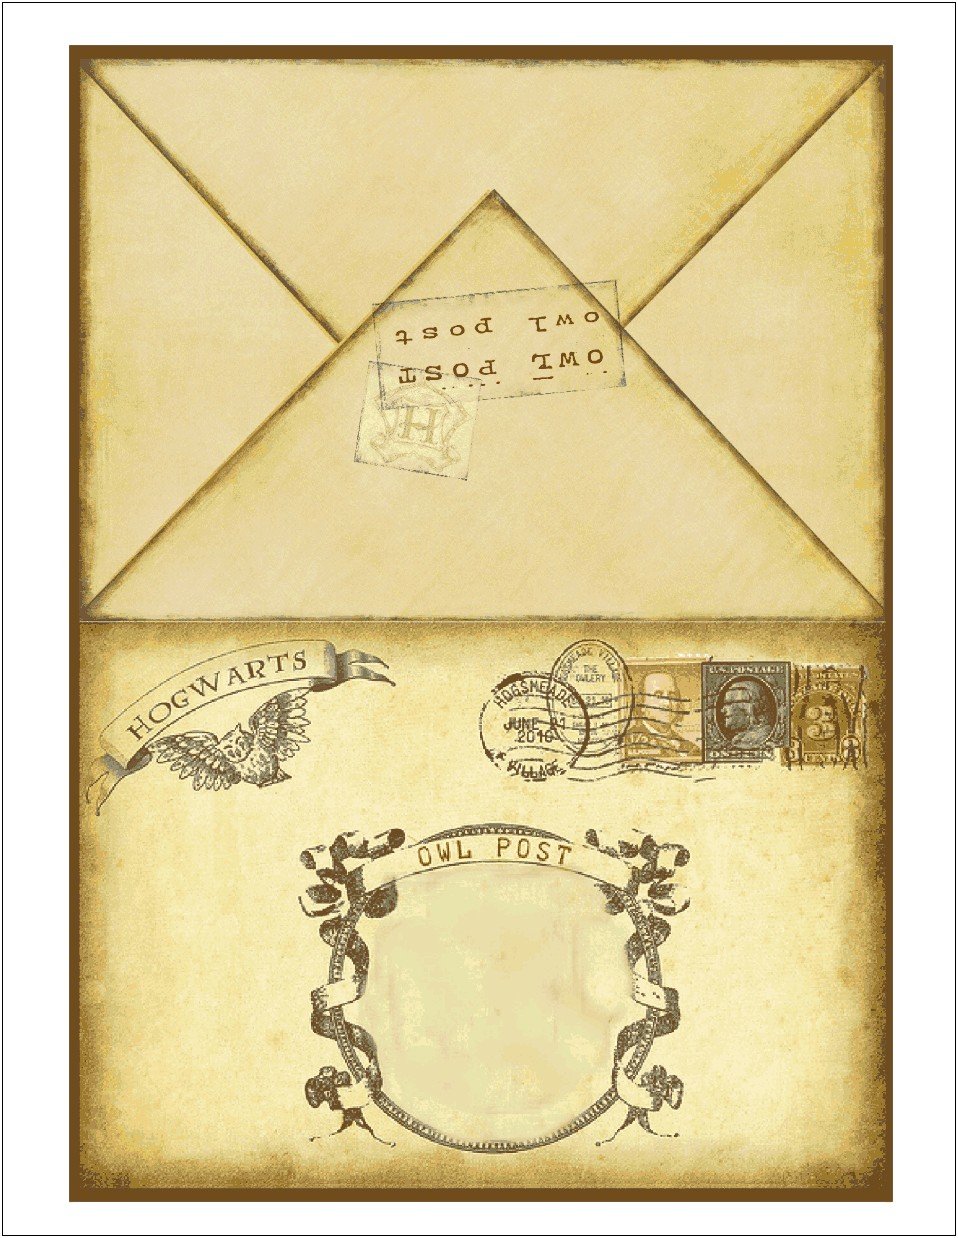 Harry Potter Hogwarts Letter Envelope Template